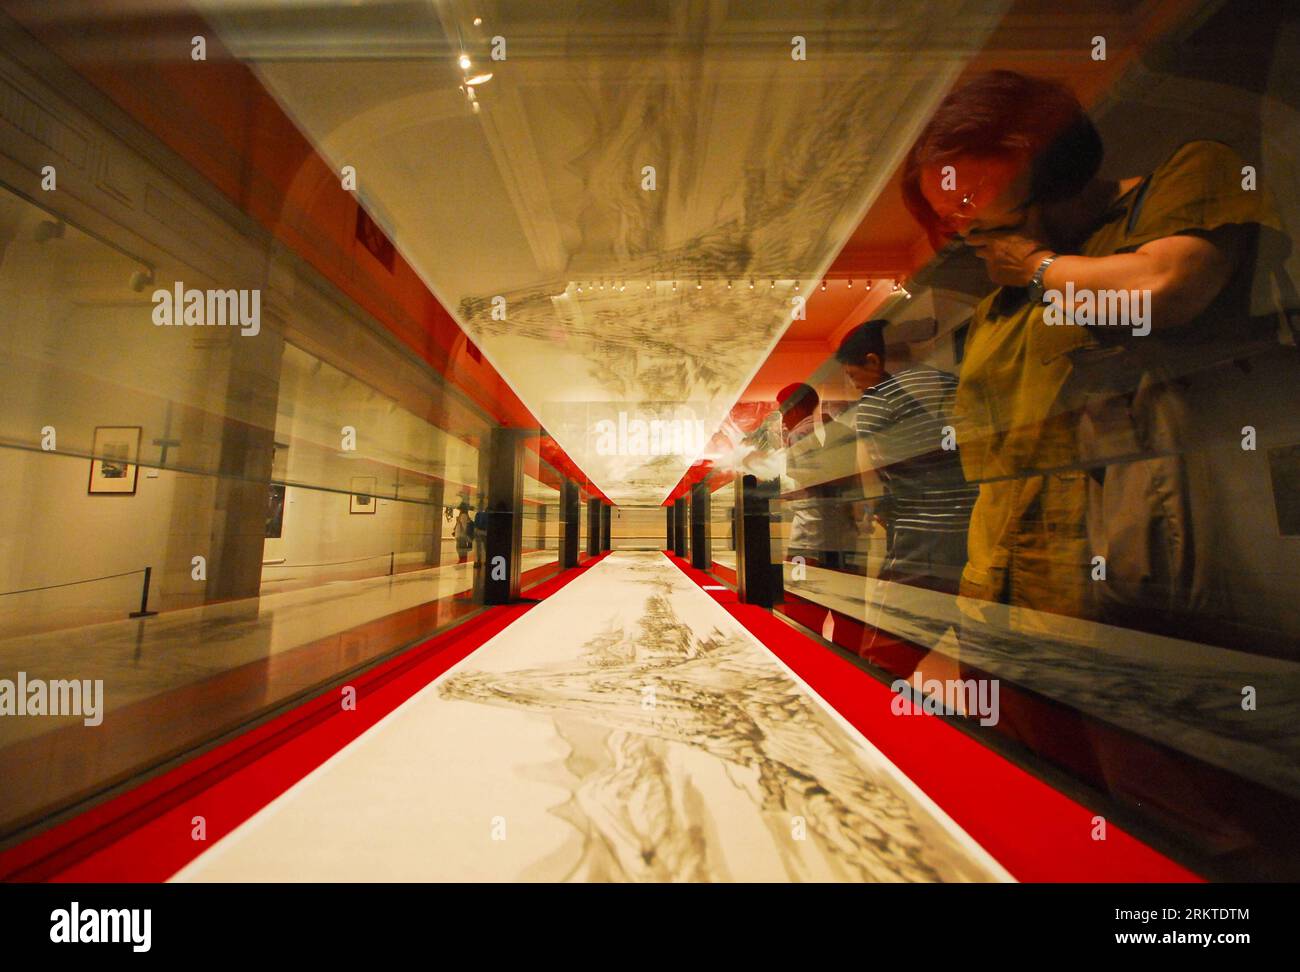 Bildnummer : 58453518 Datum : 10.09.2012 Copyright : imago/Xinhua (120910) -- SHANGHAI, 10 septembre 2012 (Xinhua) -- les visiteurs regardent une exposition de peinture au Shanghai Art Museum à Shanghai, dans l'est de la Chine, le 10 septembre 2012. Le 1 octobre 2012, le Musée d'Art de Shanghai sera transféré dans le bâtiment utilisé pour être le Pavillon de la Chine lors de l'exposition universelle de Shanghai de 2010. Au total, 27 salles d'exposition seront installées au musée d'art, couvrant une surface d'exposition de plus de 64000 mètres carrés. (Xinhua) (zhs) CHINA-SHANGHAI-ART MUSEUM-TRANSFER (CN) PUBLICATIONxNOTxINxCHN Kultur Kunst Museum Ausstellung x0 Banque D'Images